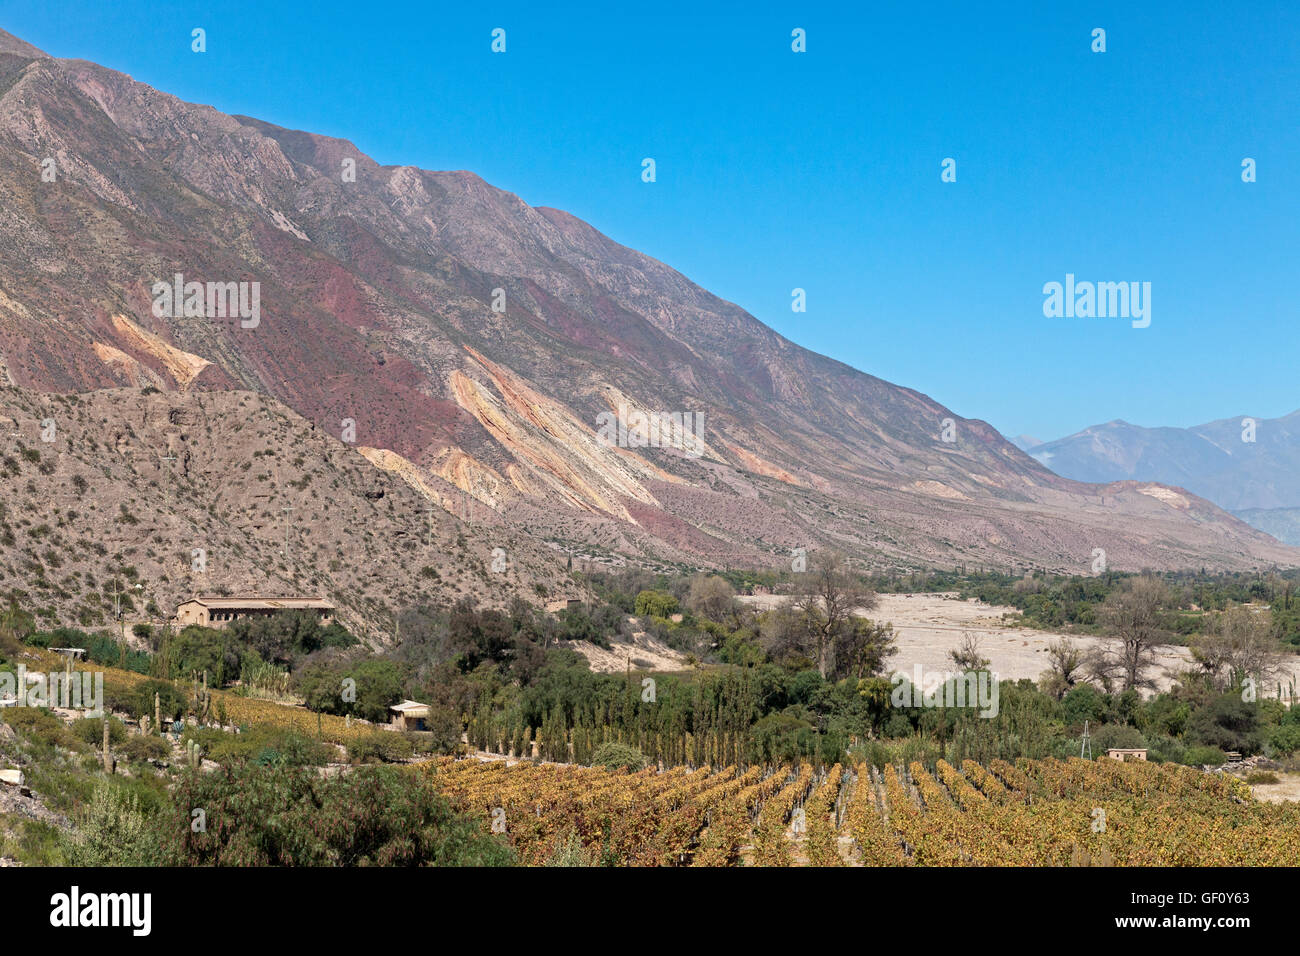 La viticulture dans les Andes, Maimara, Argentine Banque D'Images